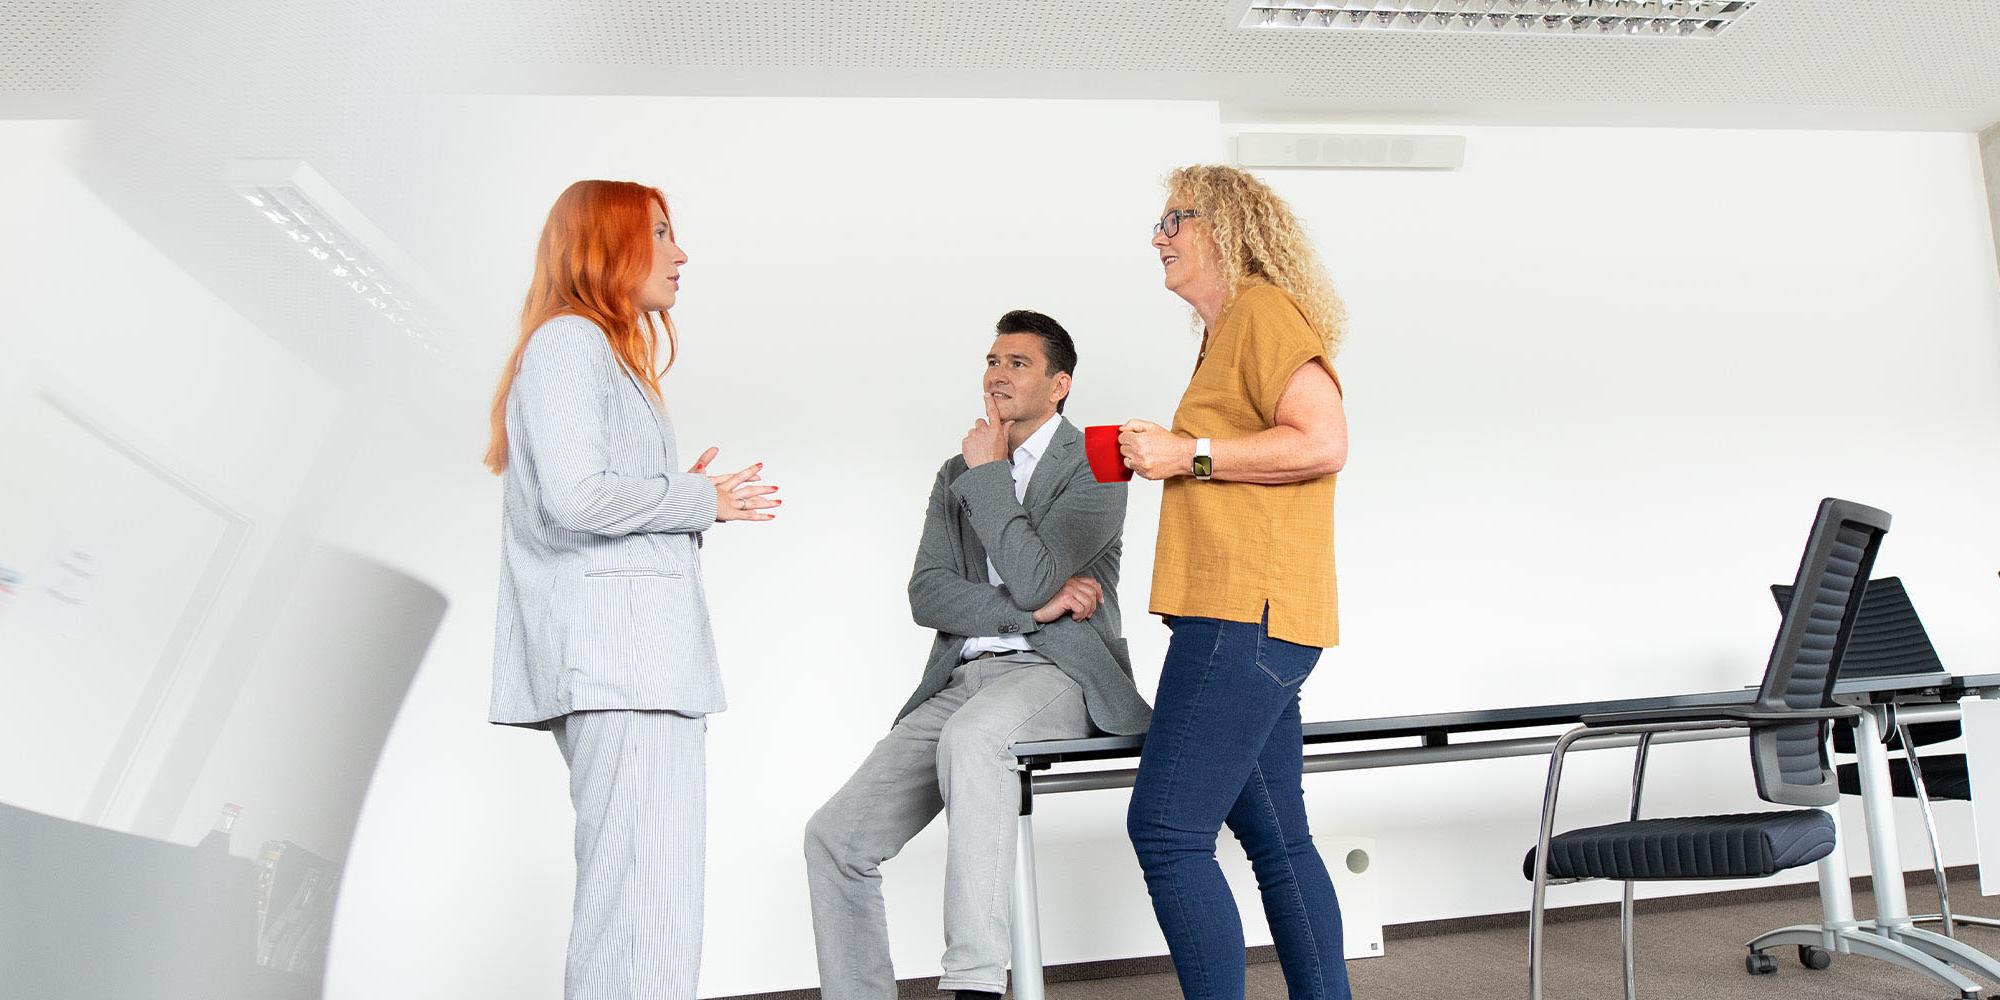 Gesprächssituation in einem Besprechungsraum, zwei Frauen und ein Mann